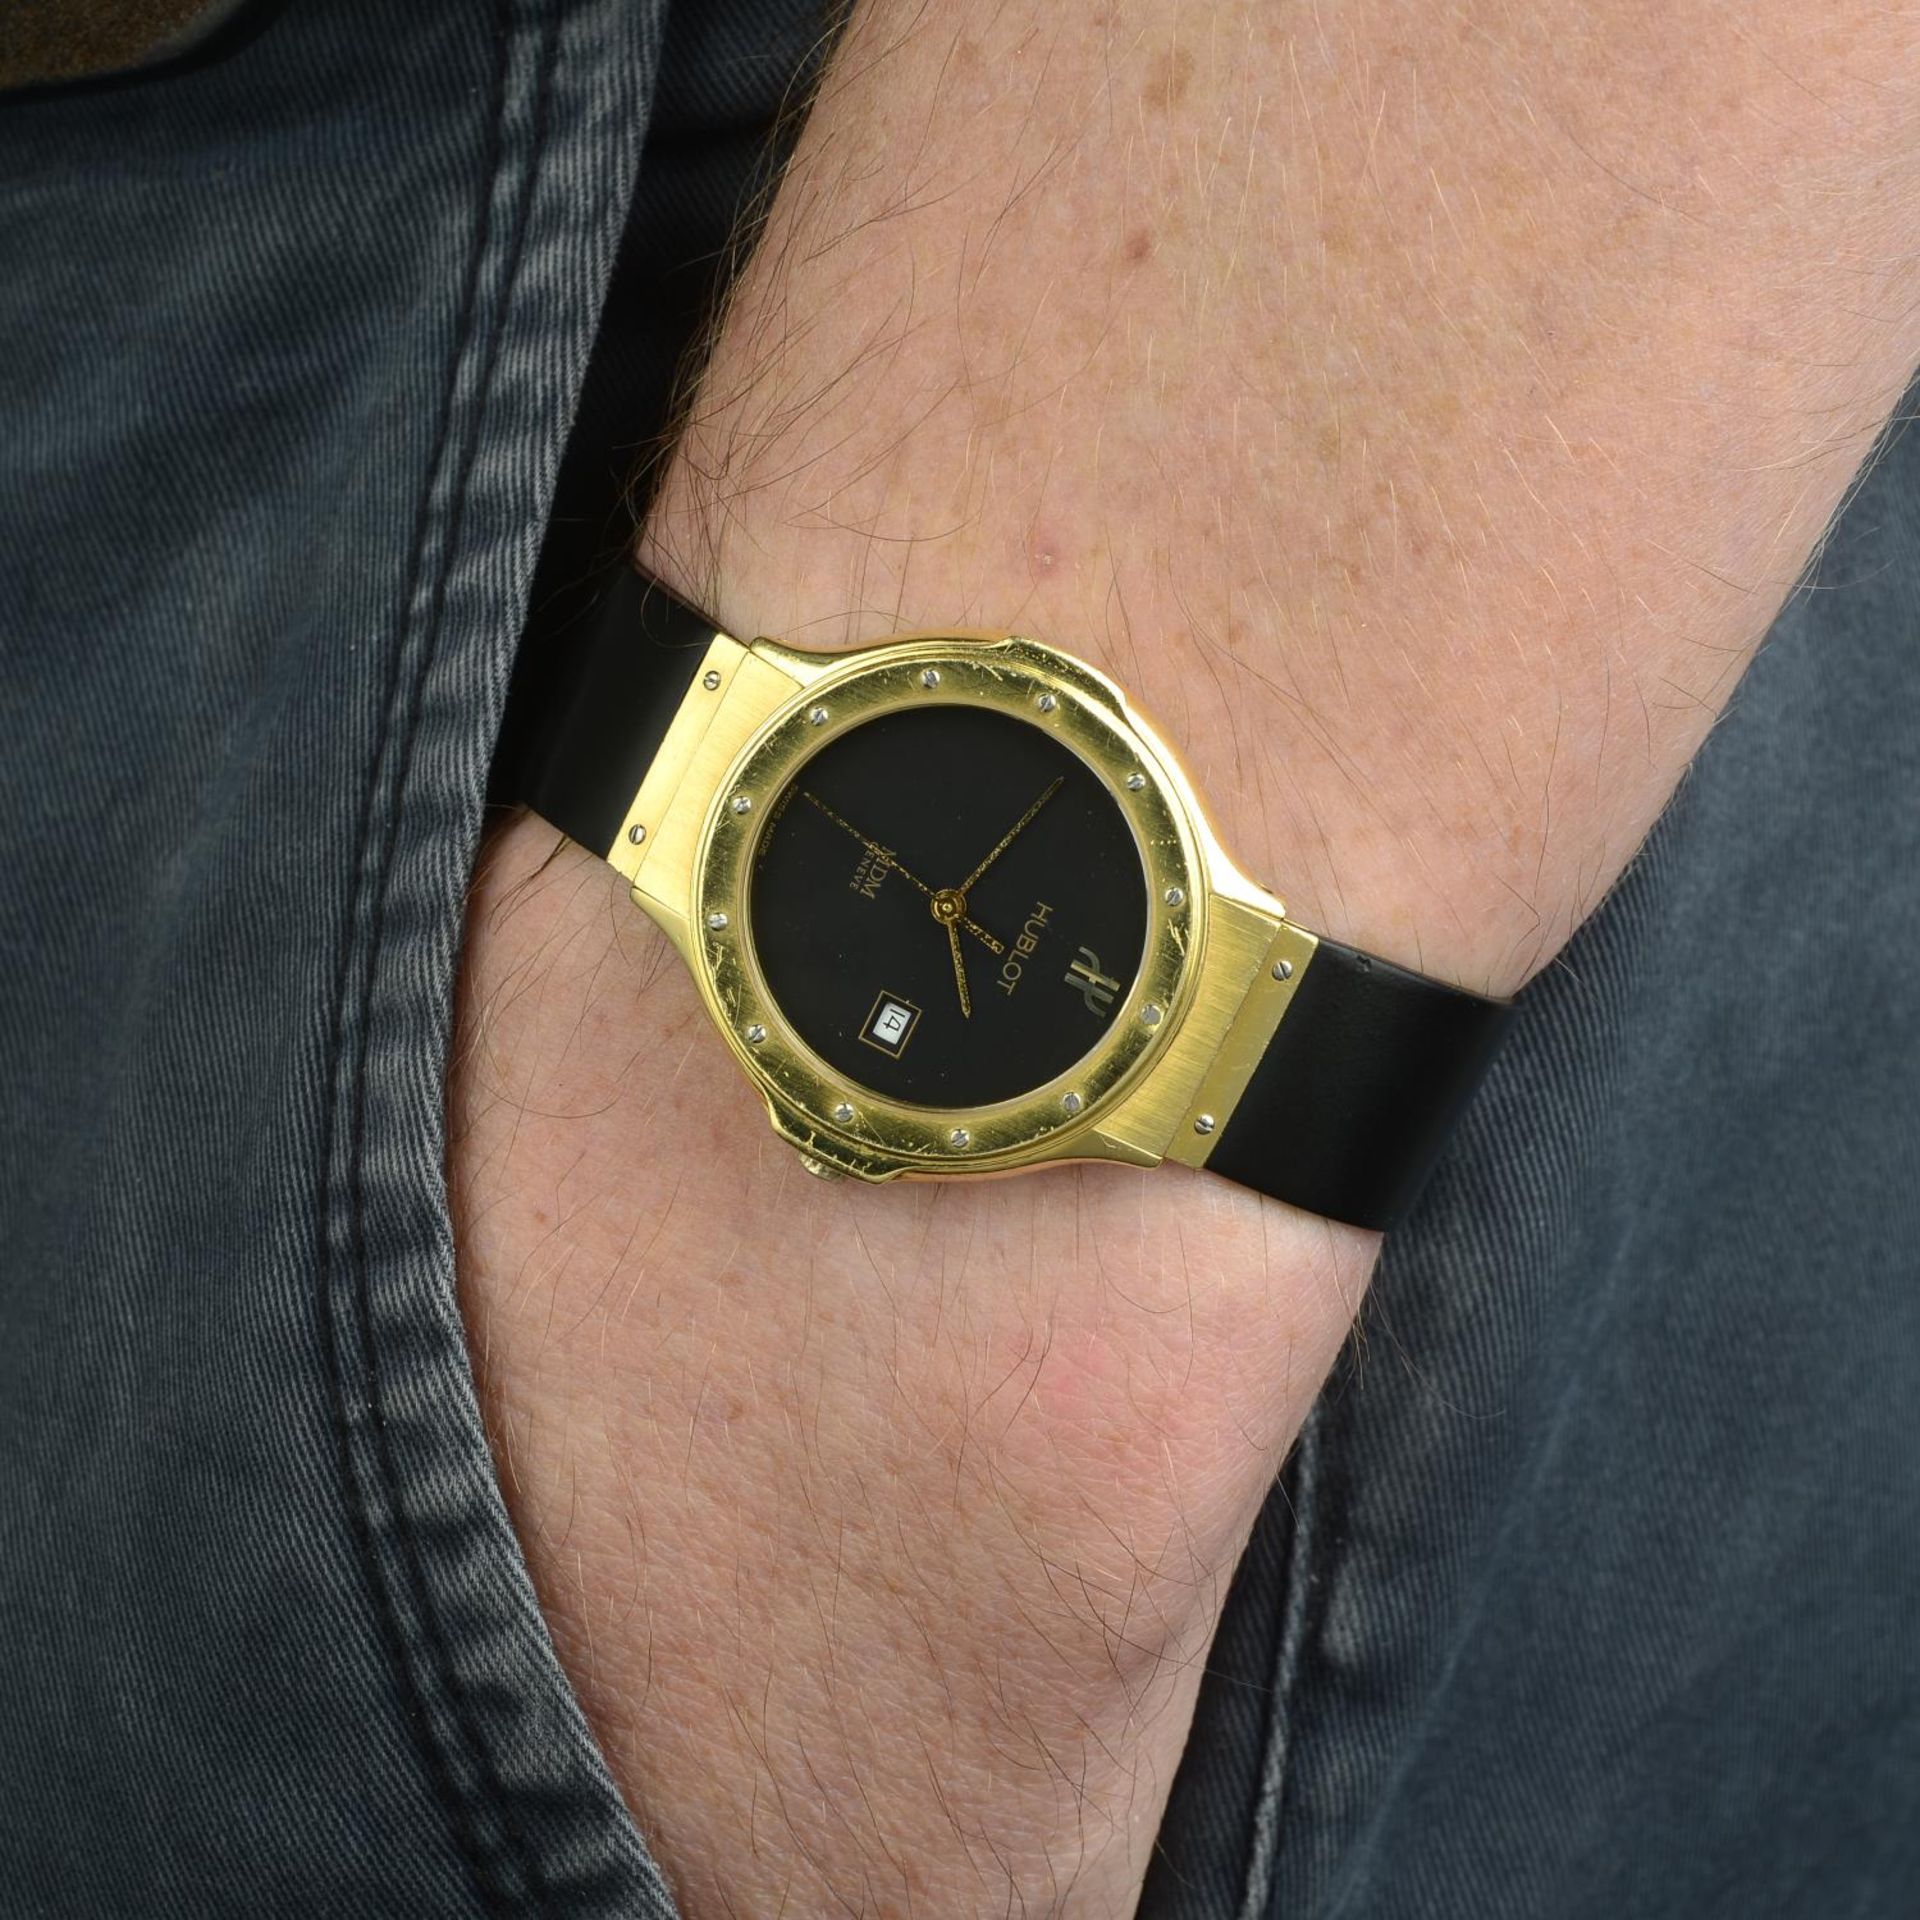 HUBLOT - a mid-size MDM wrist watch. - Image 3 of 5